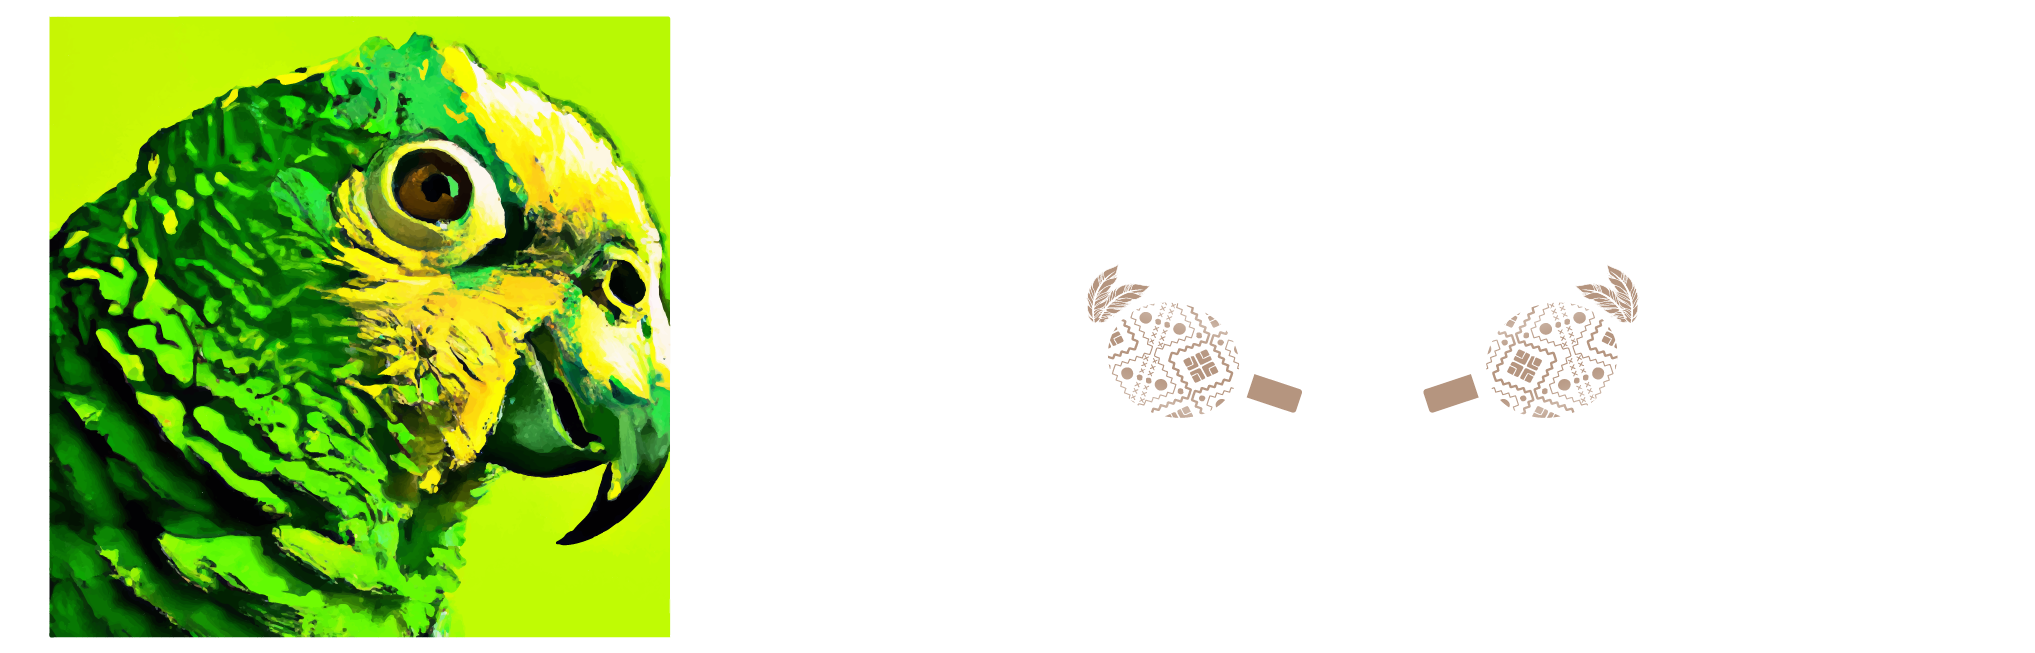 DOCALEXANDER.COM